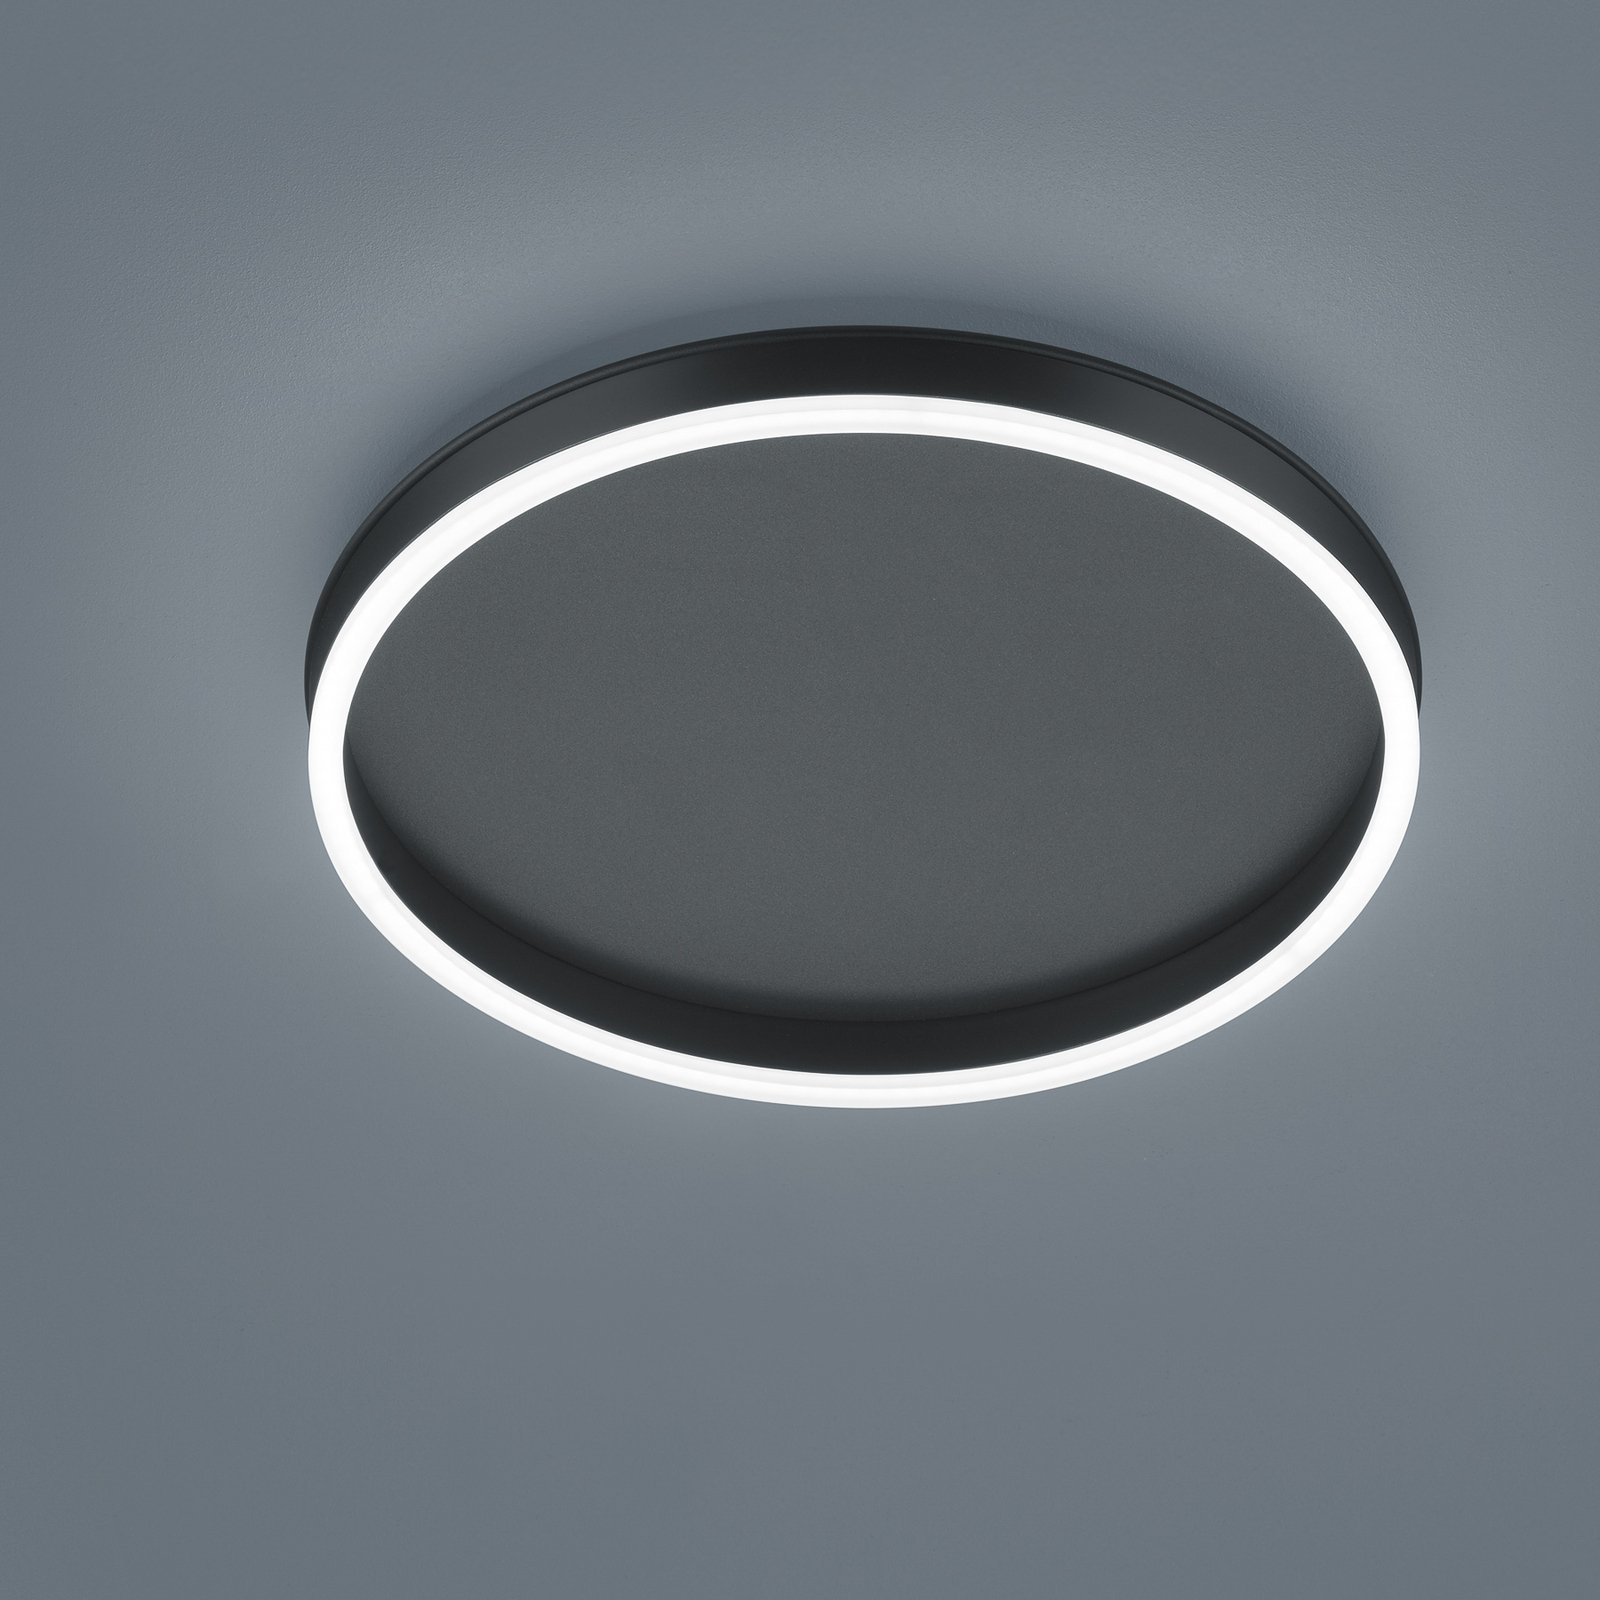 Helestra Sona LED ceiling light, black, Ø 40 cm